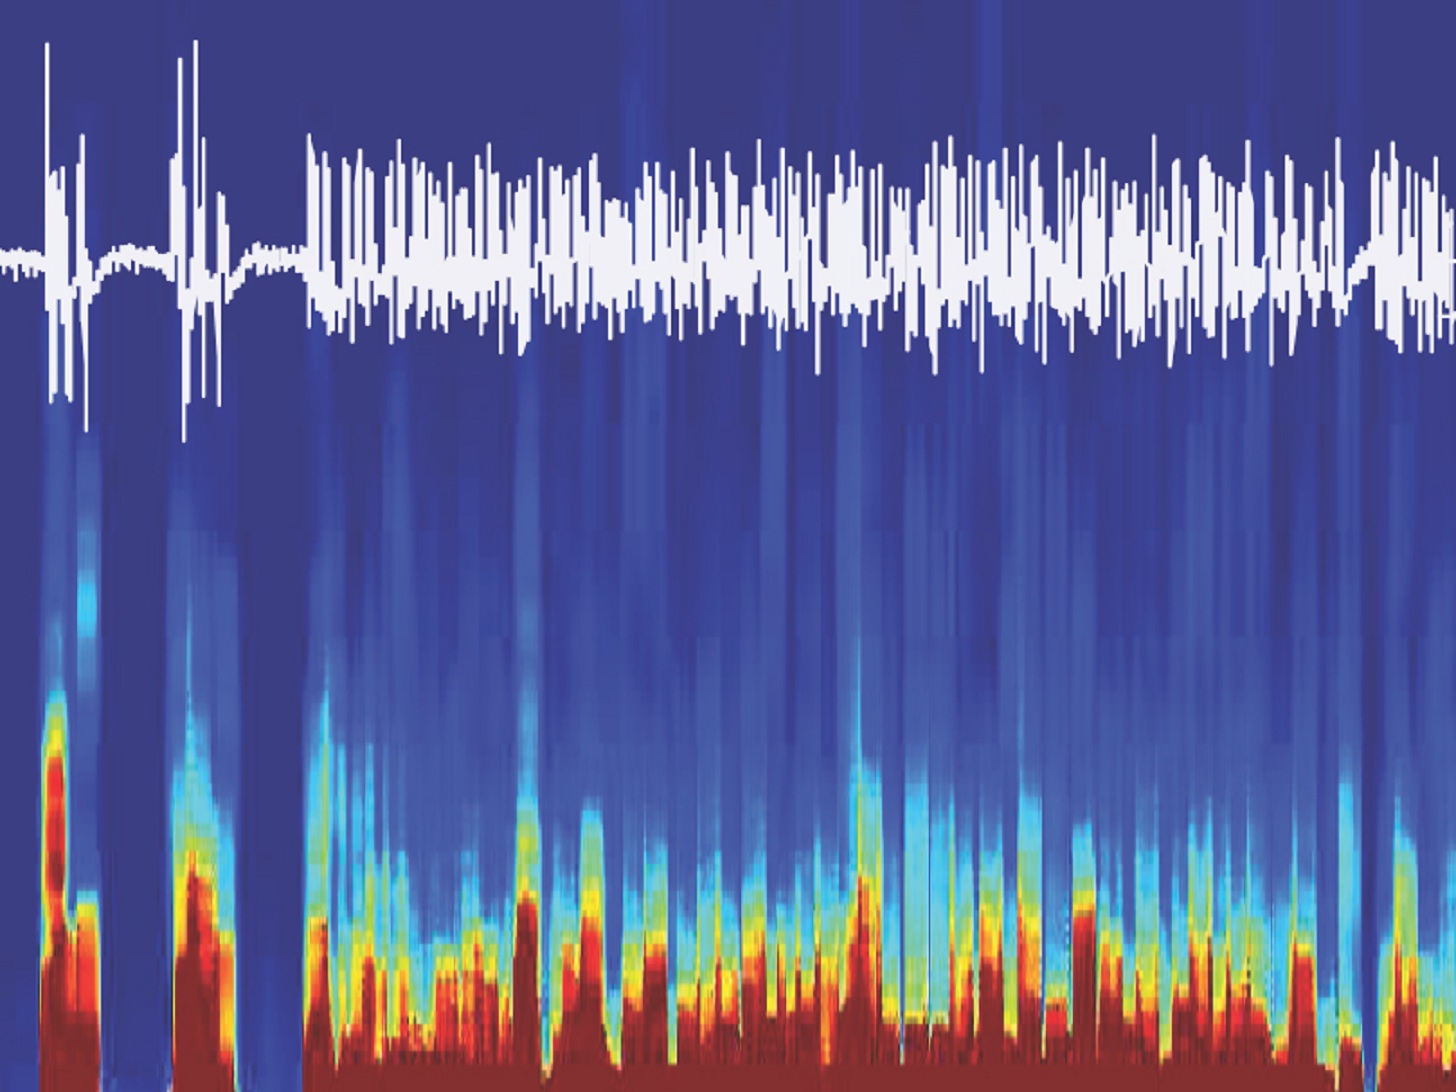 Señales cerebrales EEG registradas de ratón, mientras este se despertaba de la anestesia gracias a la estimulación con optogenética del circuito cerebral encontrado. Fuente: Universidad de Berna.